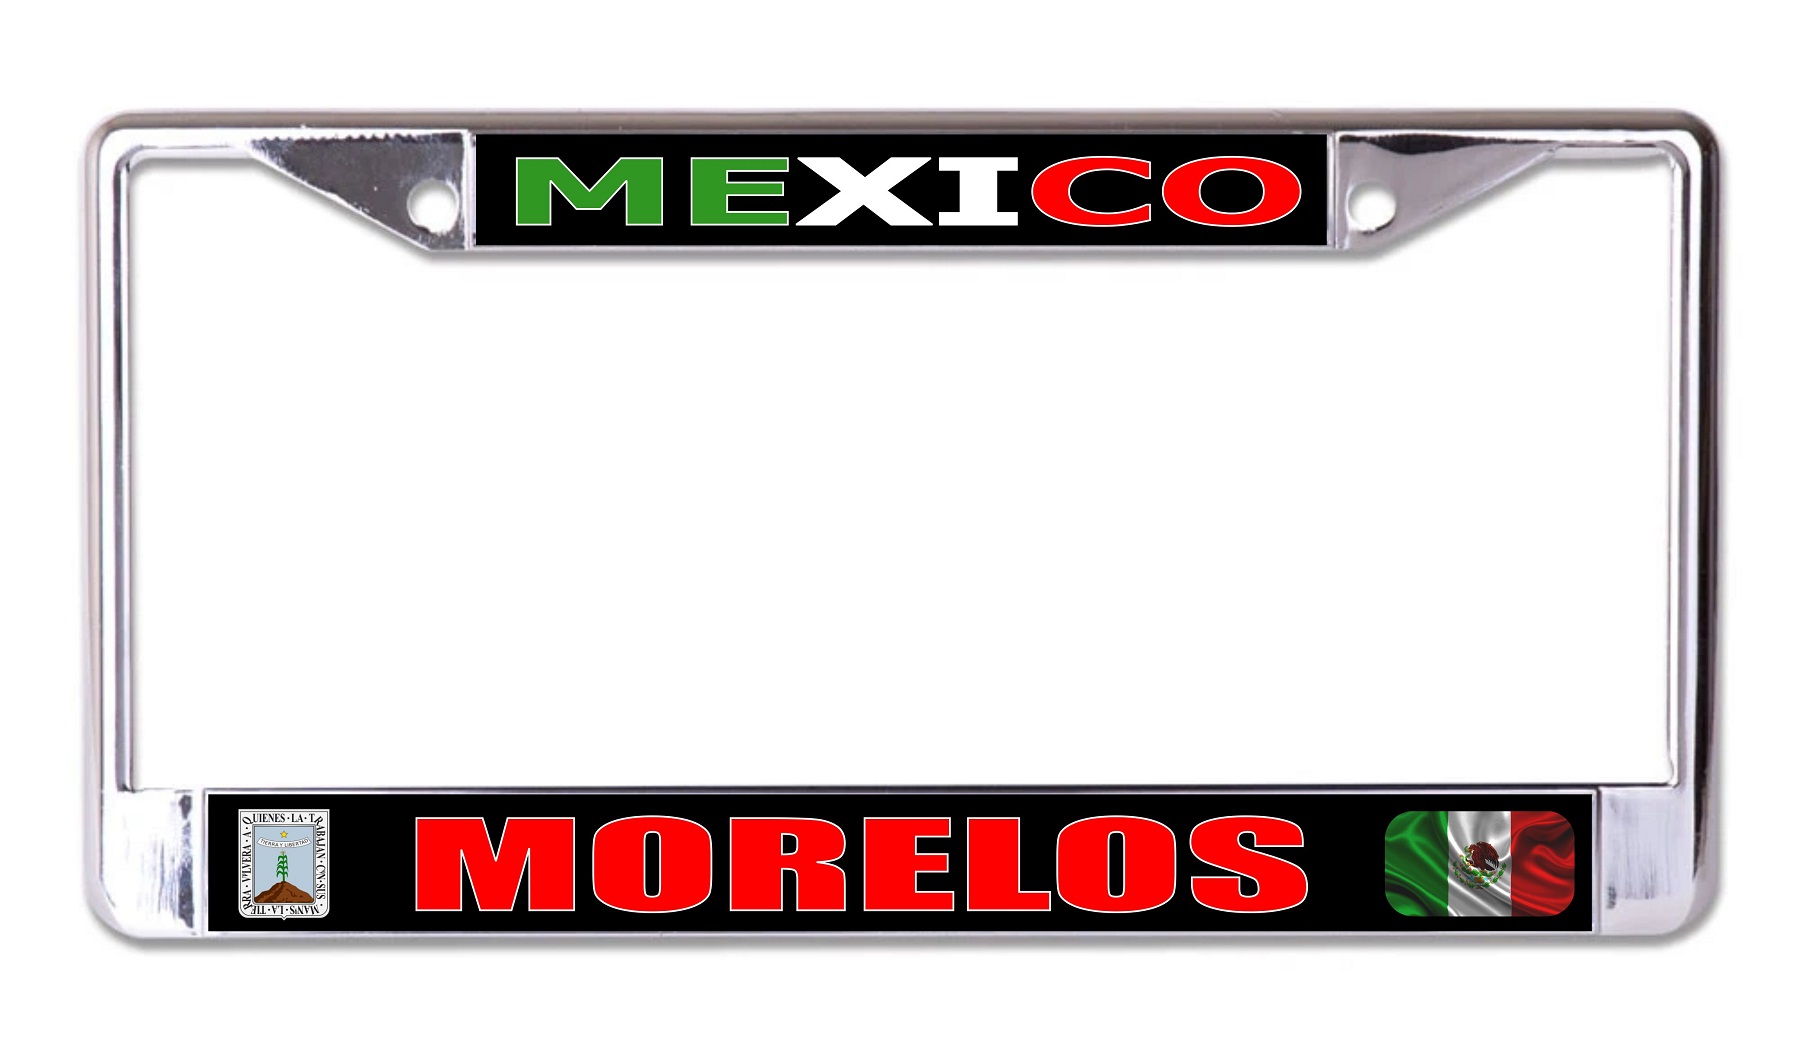 Mexico Morelos Chrome LICENSE PLATE Frame